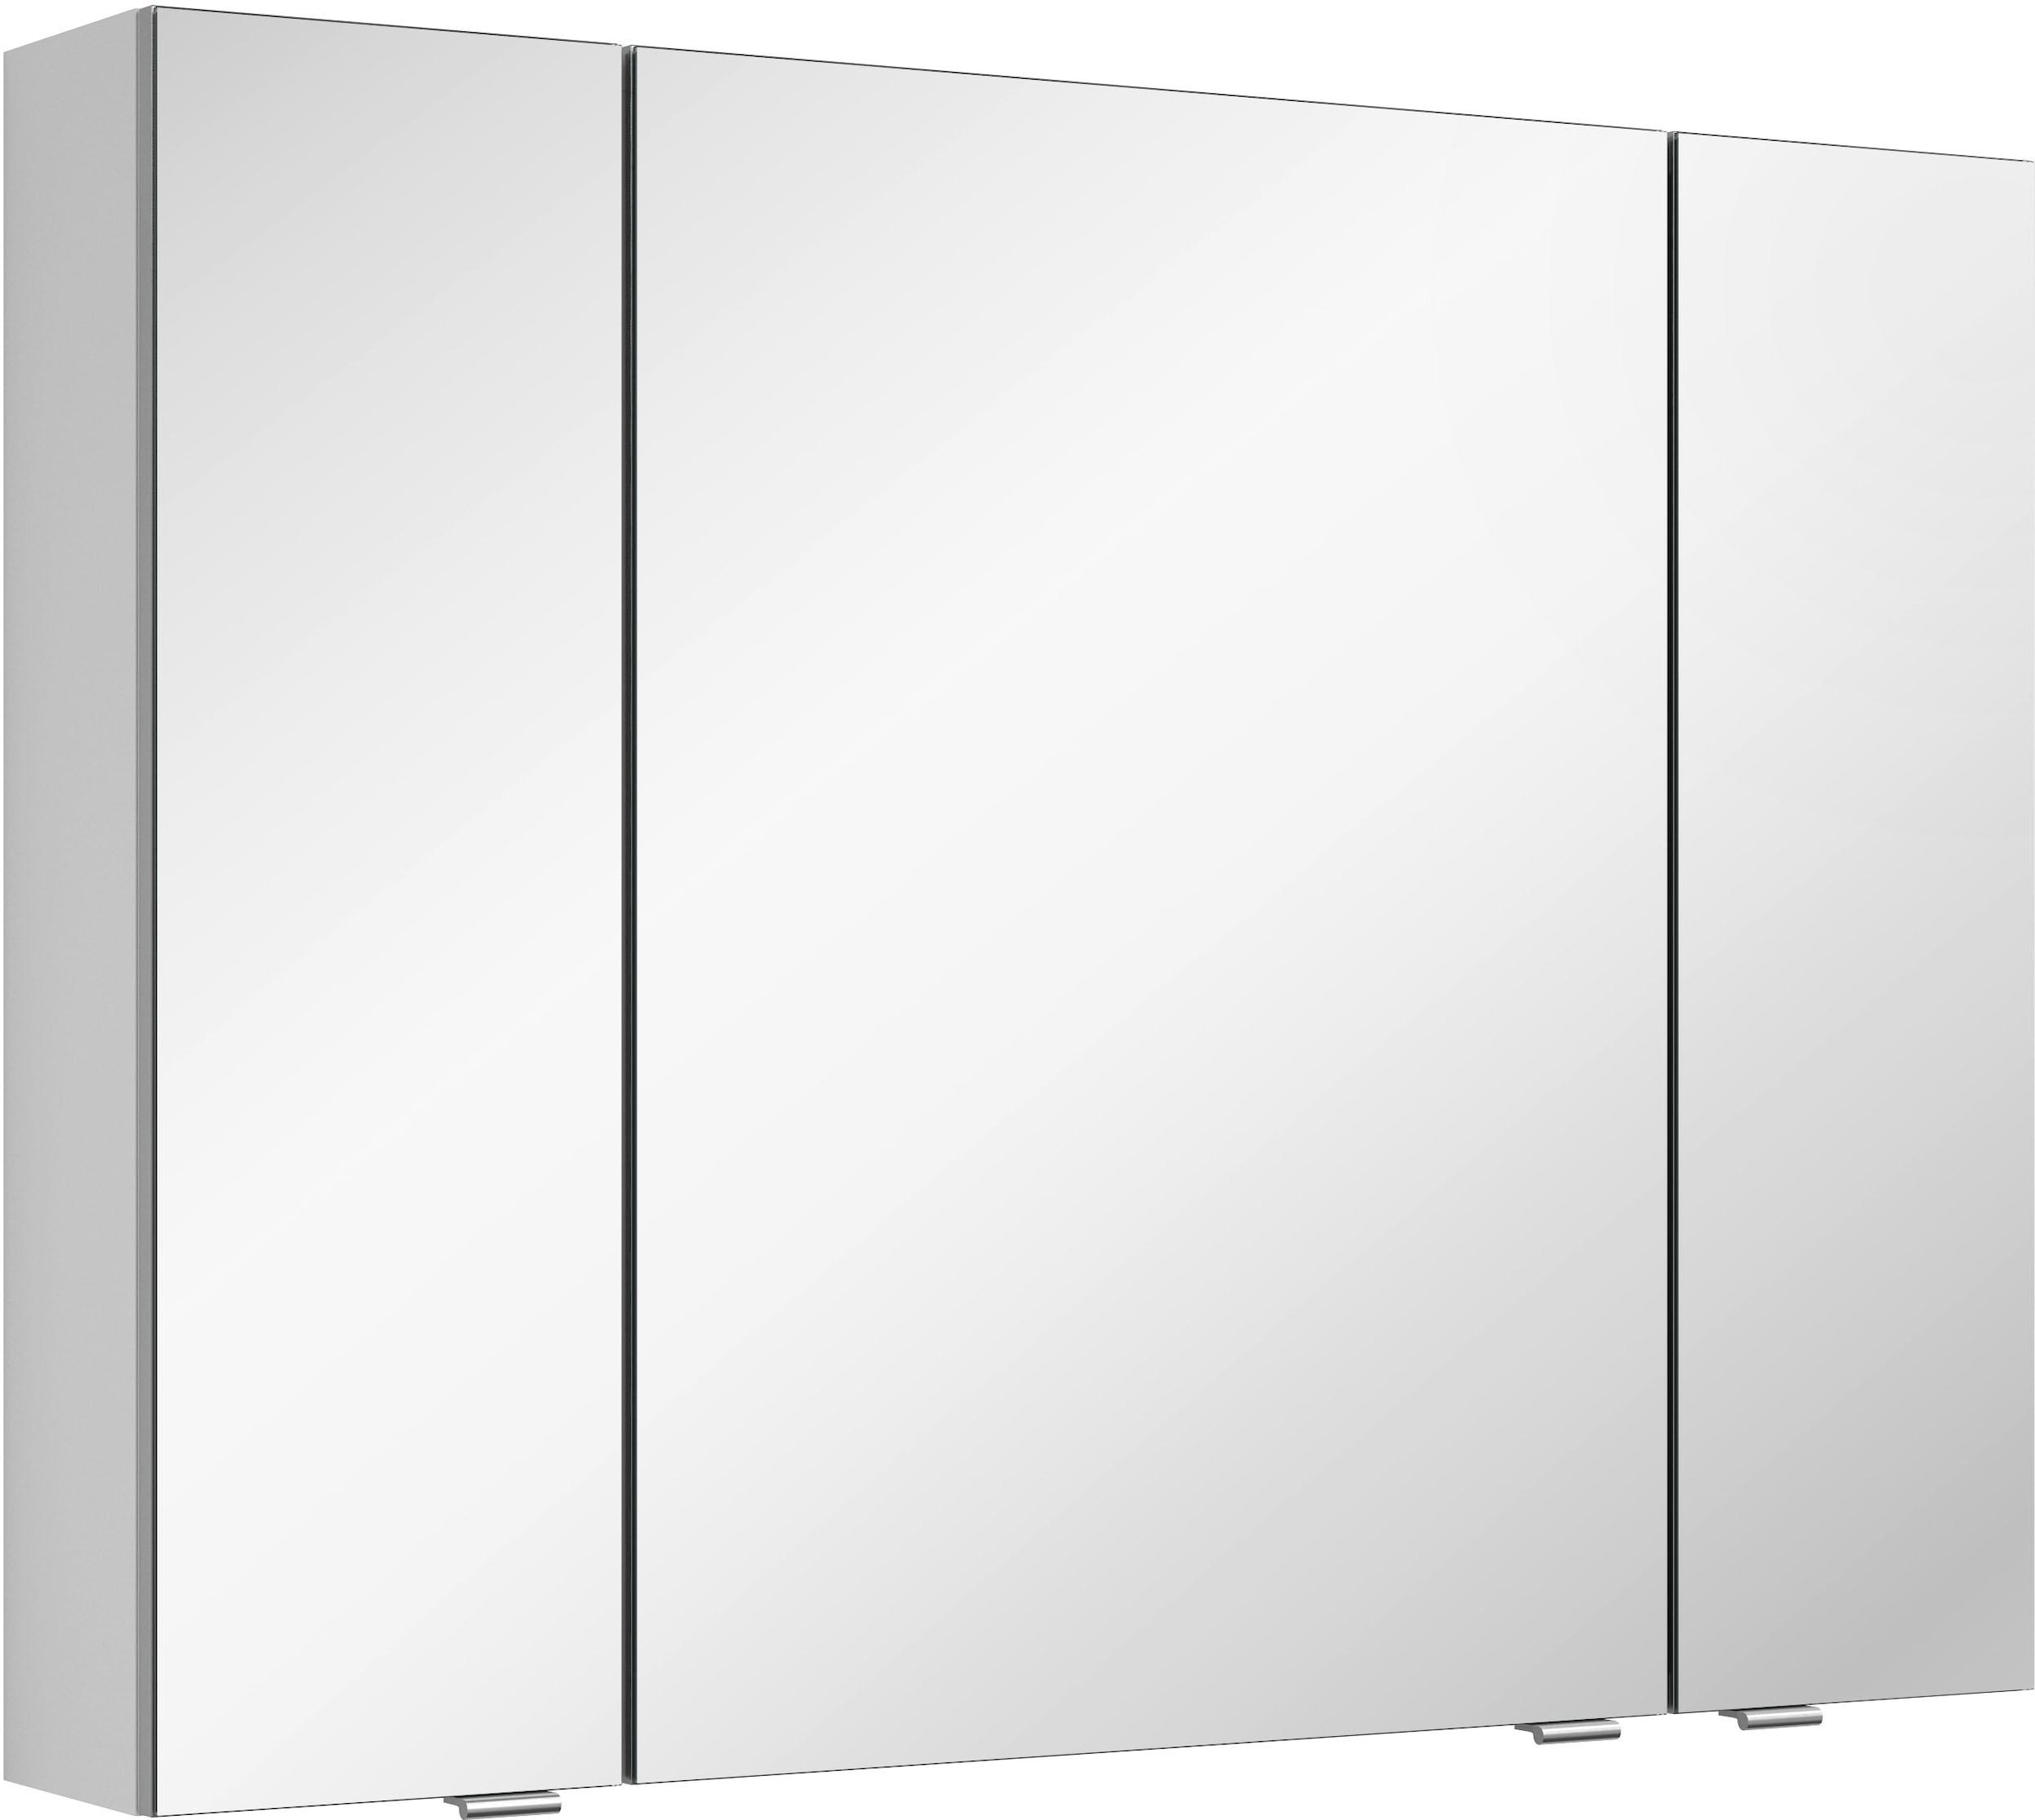 MARLIN Spiegelschrank "3980", mit doppelseitig verspiegelten Türen, vormontiert